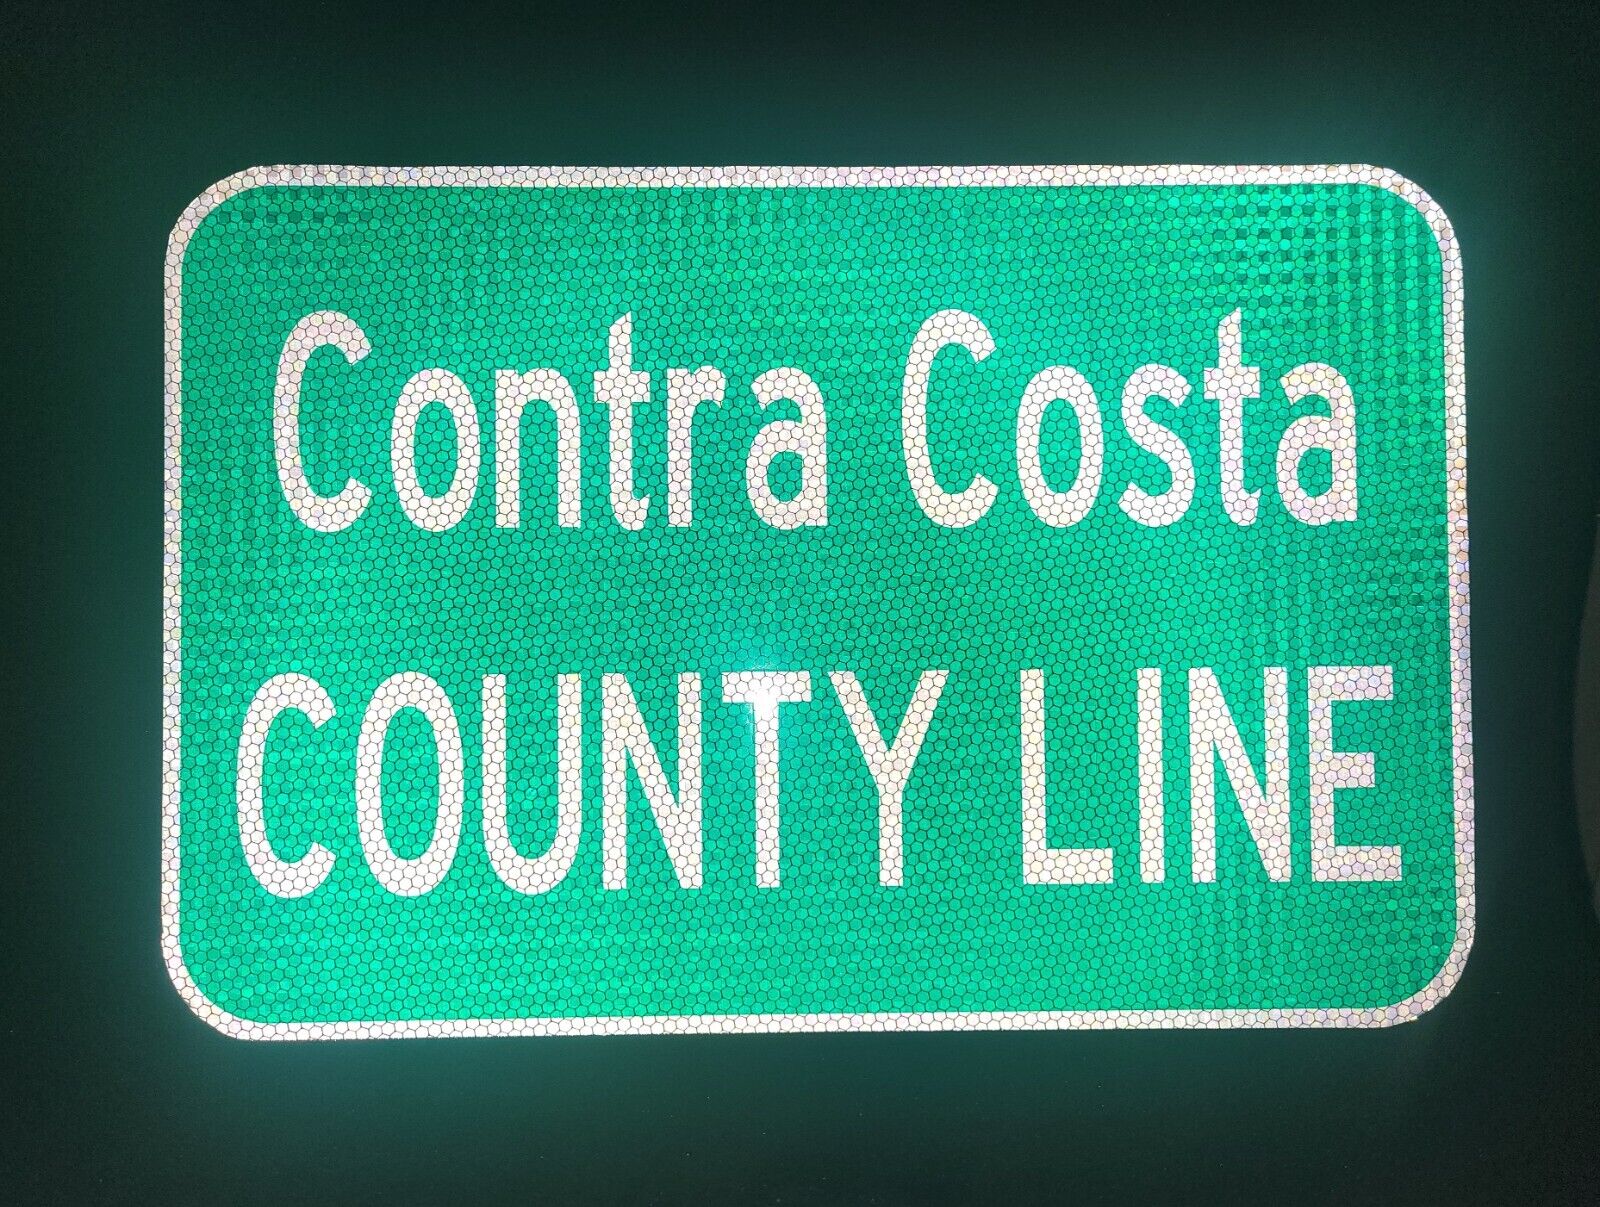 CONTRA COSTA COUNTY LINE California route road sign, Walnut Creek, Danville